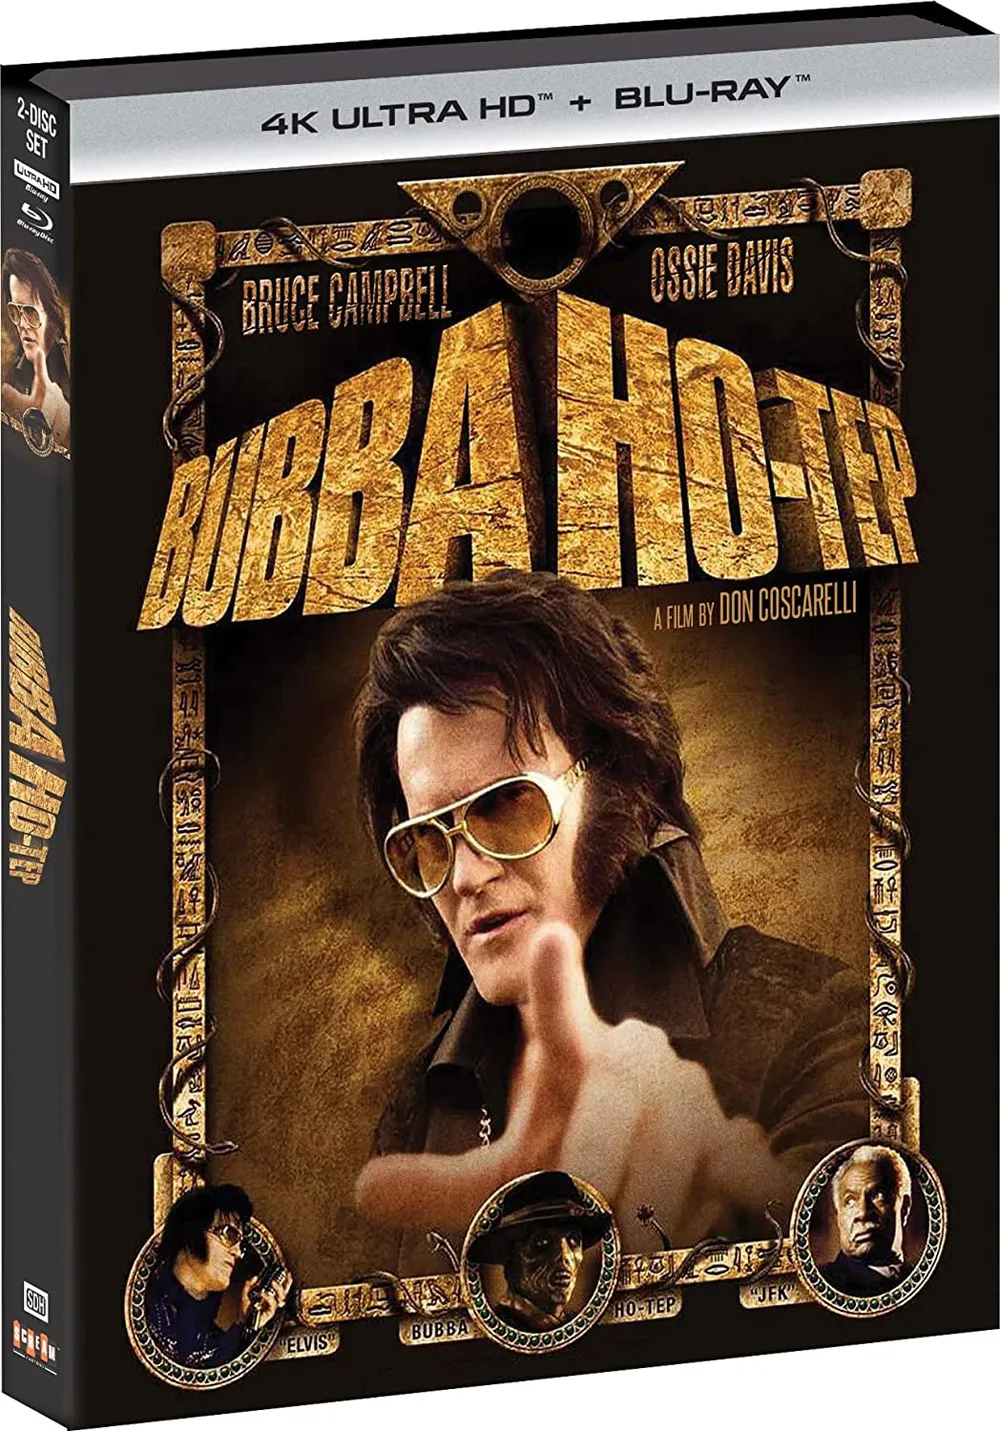 Bubba Ho-Tep 4k release date